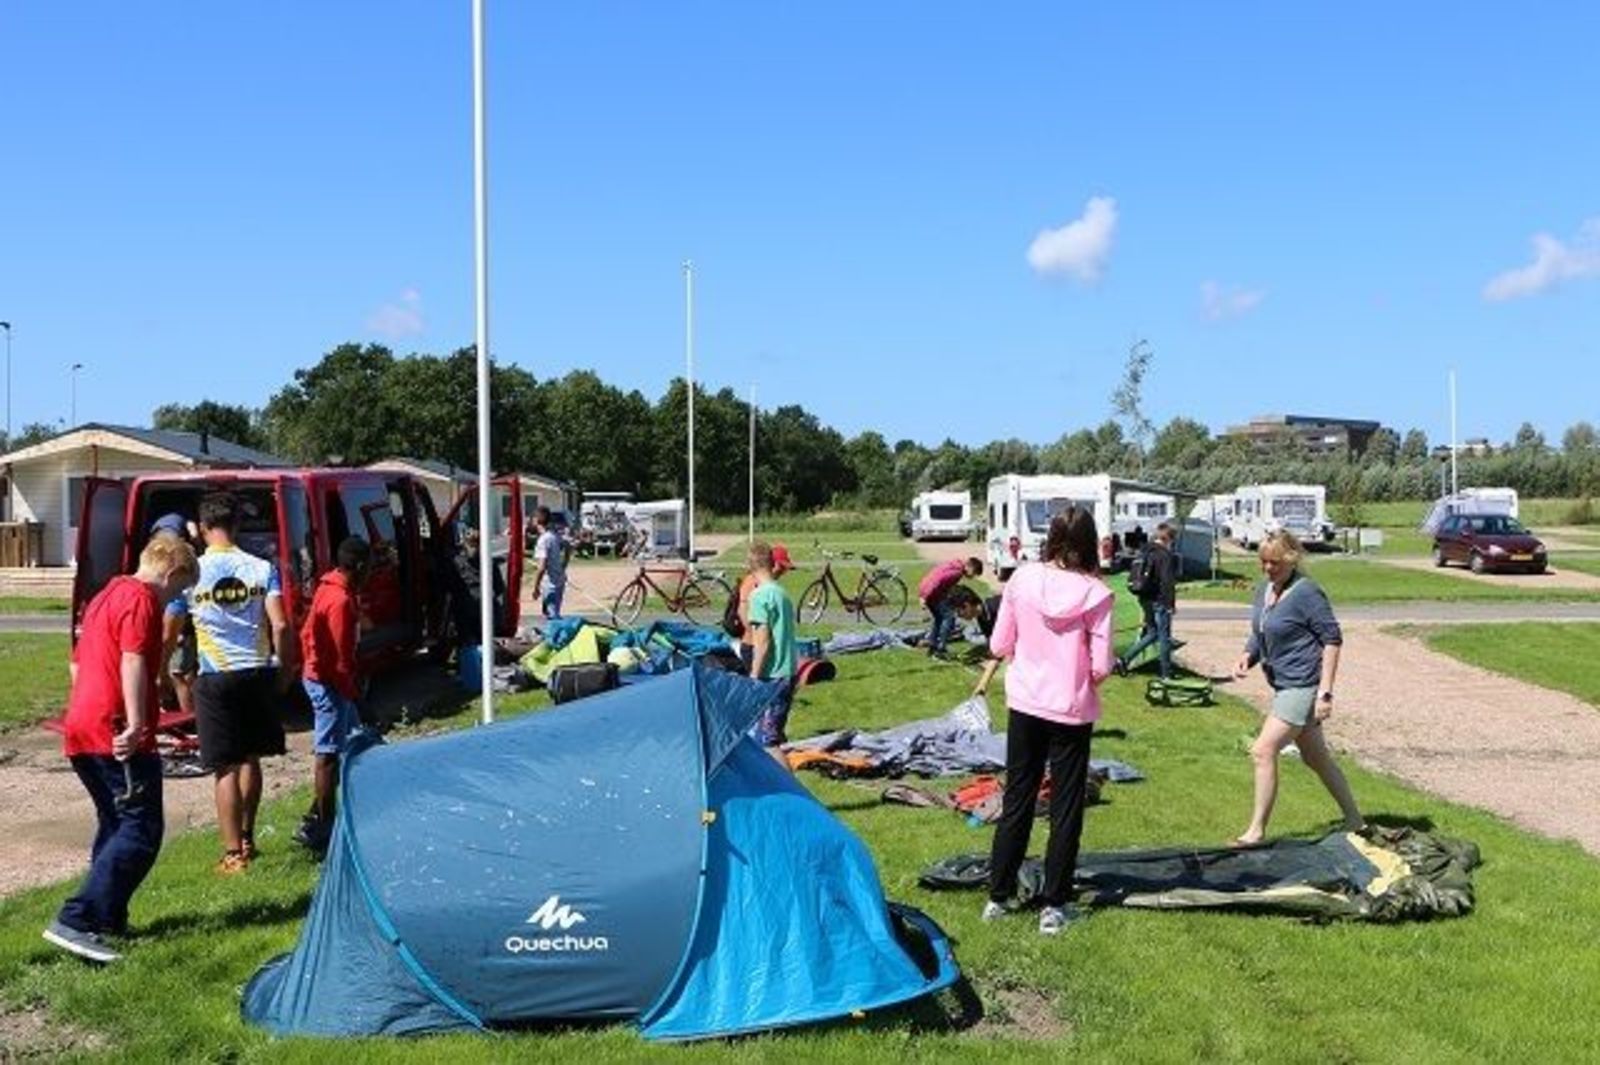 Camping stellplatz Komfort für Wohnwagen oder Wohnmobil